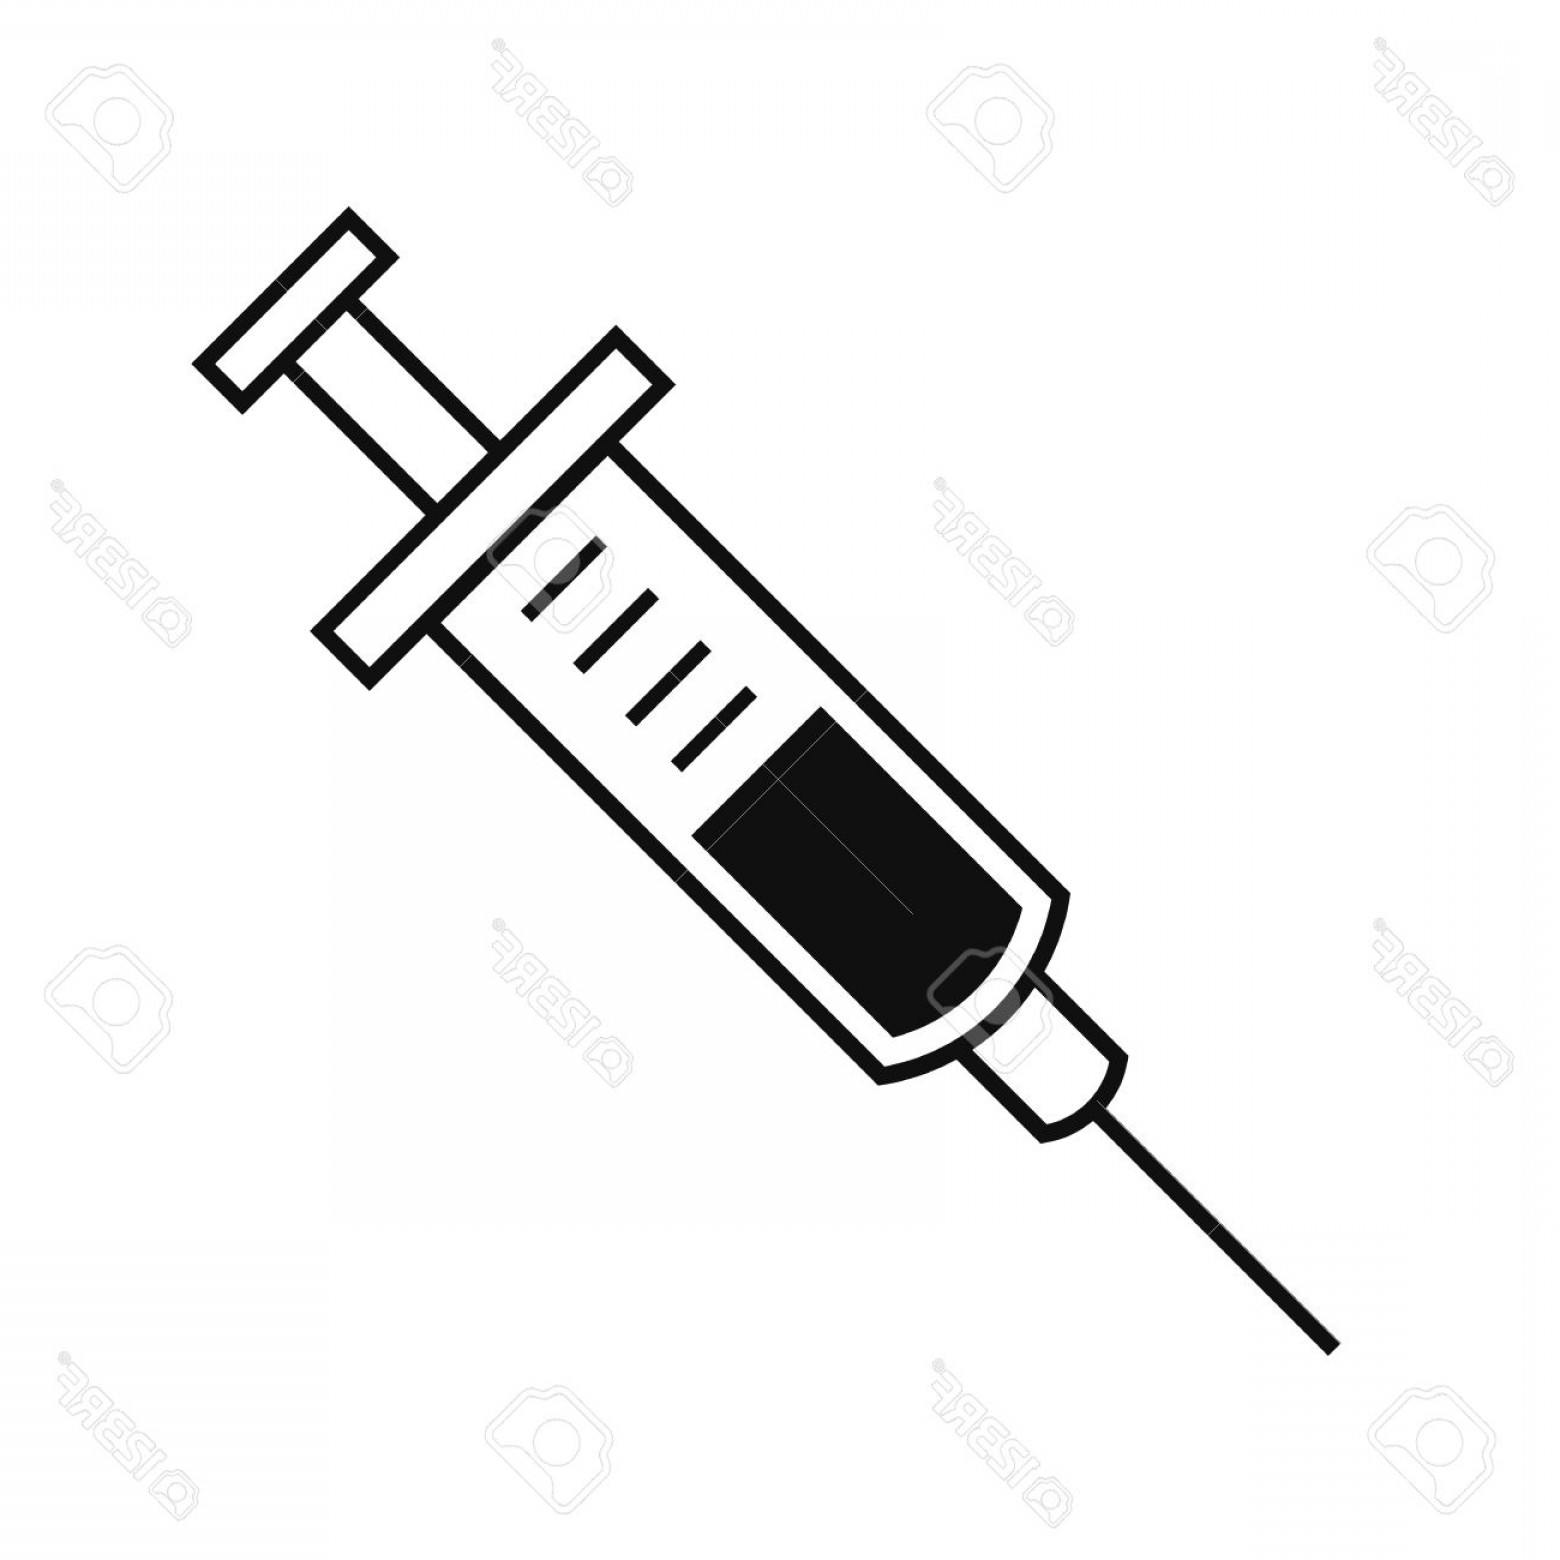 Syringe and needle.